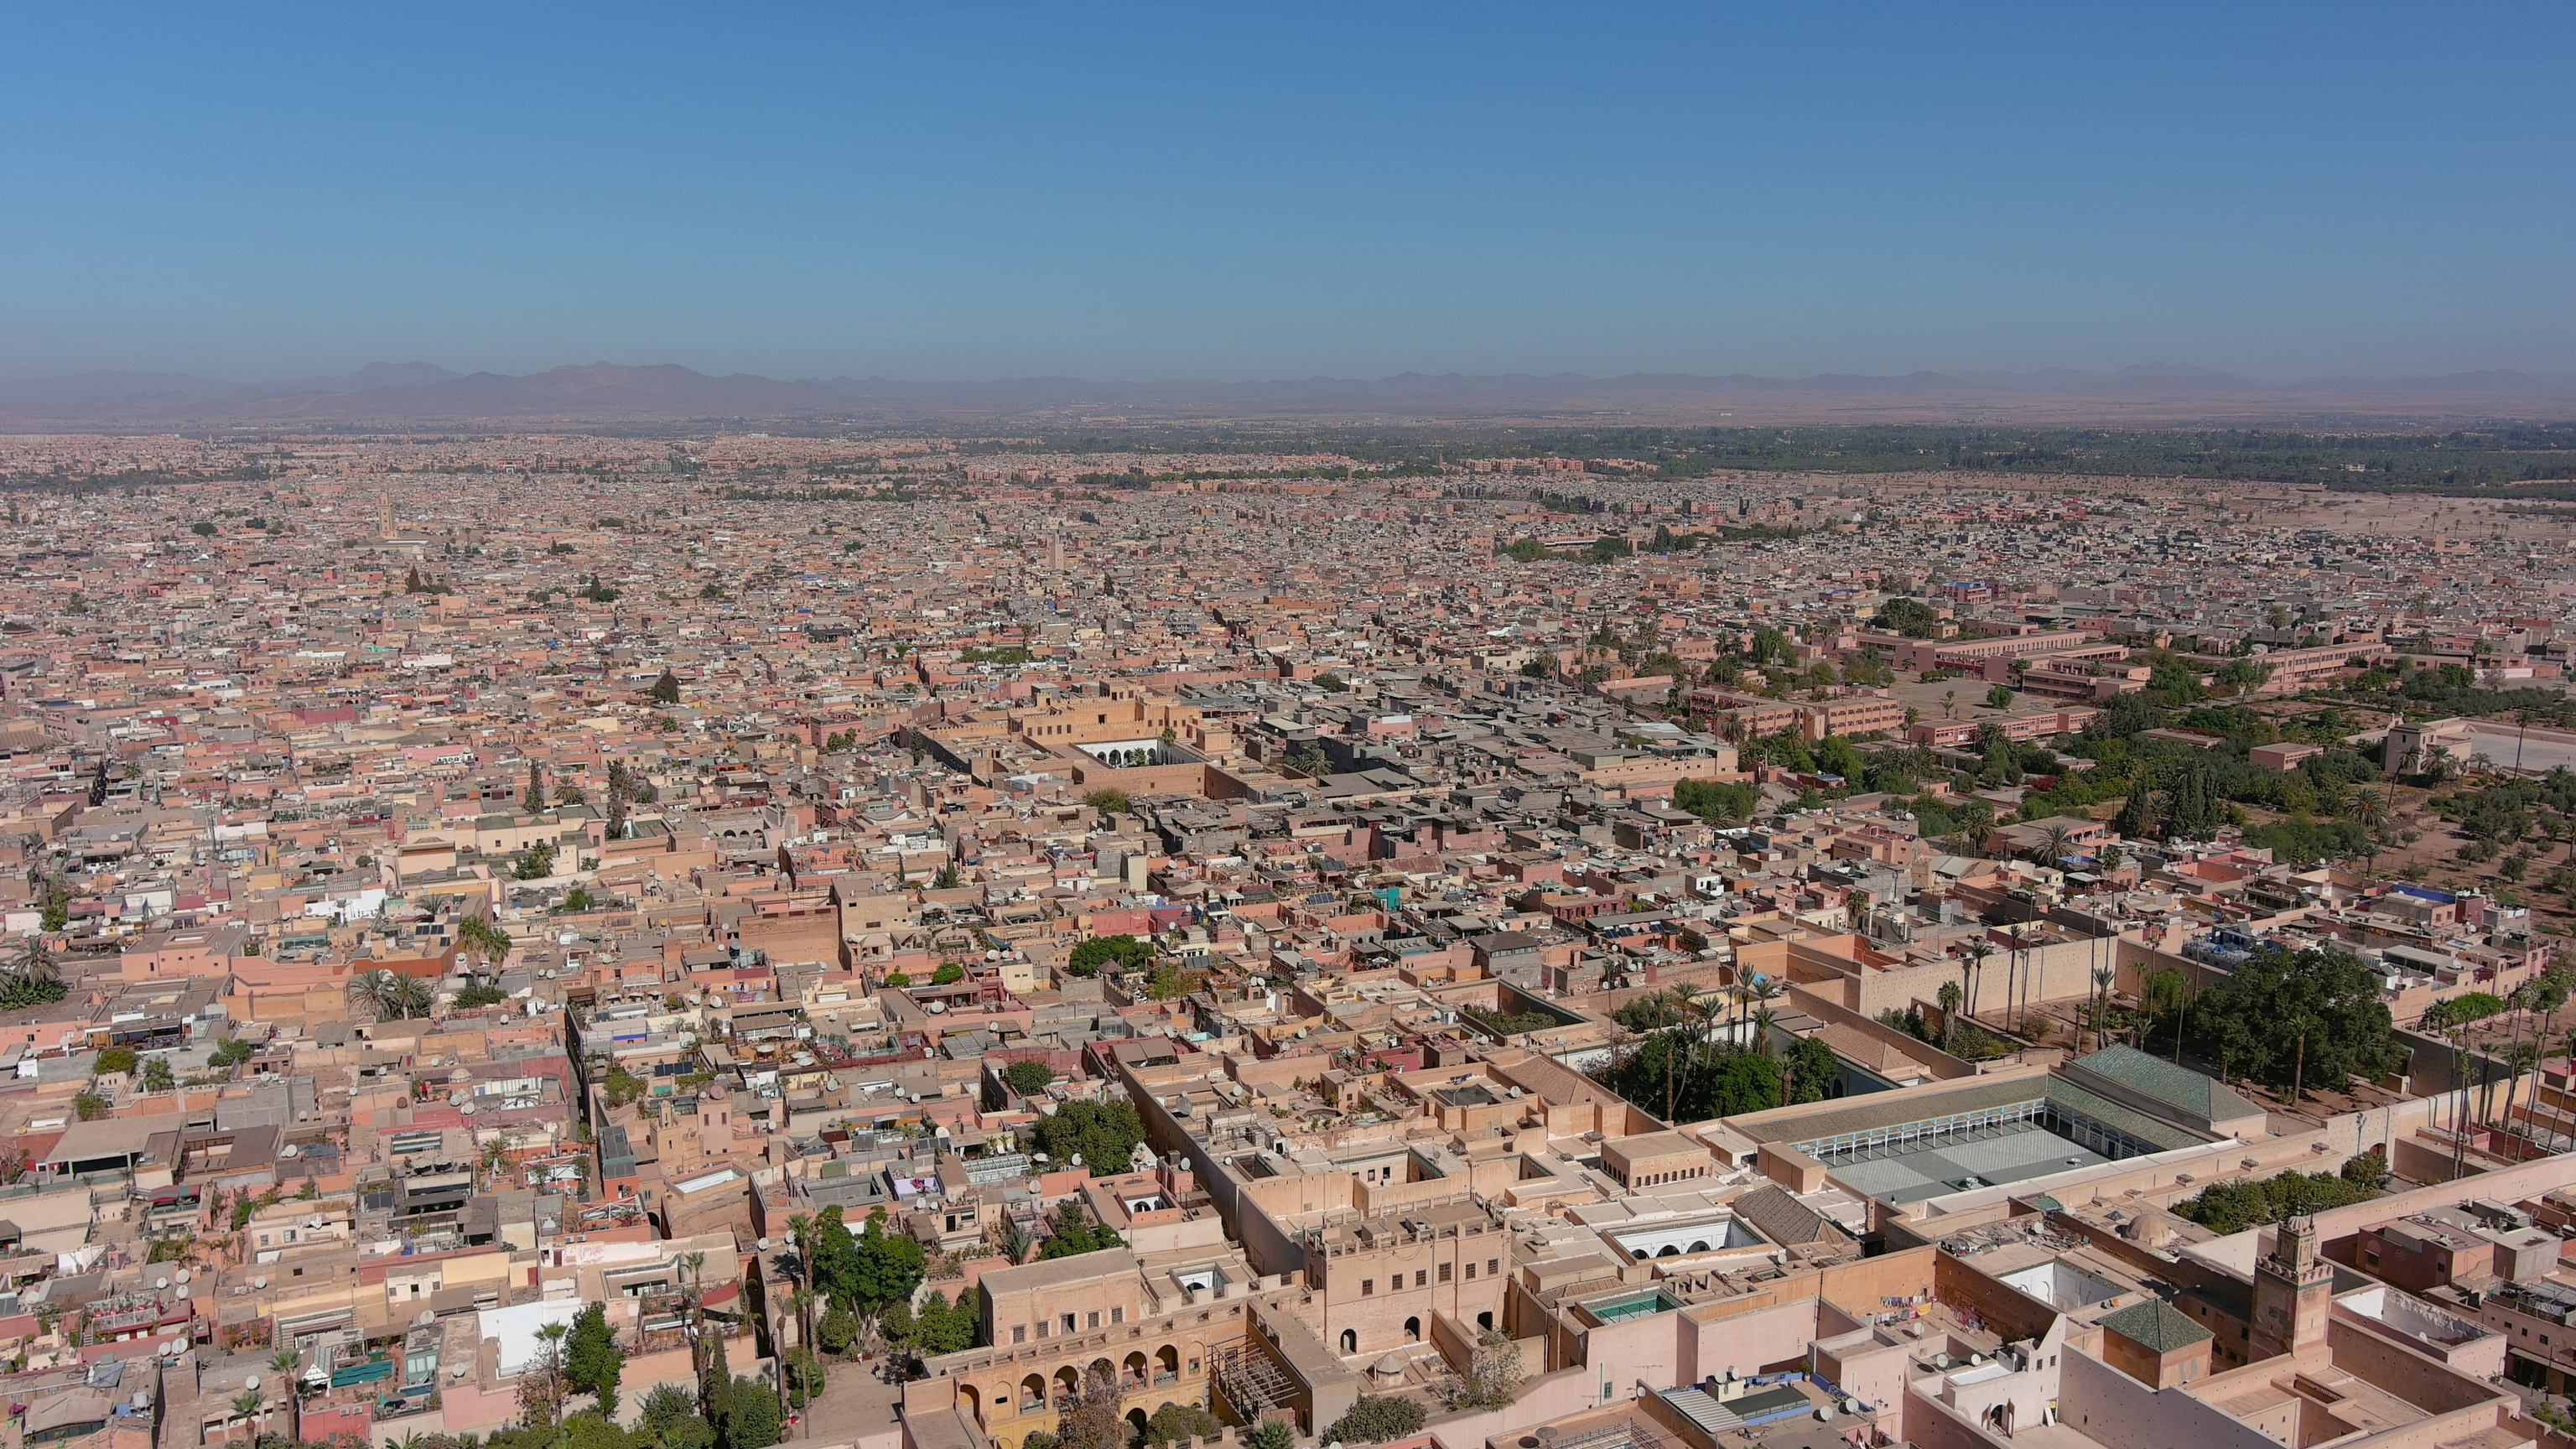 Vista aérea de la ciudad de Marrakech.